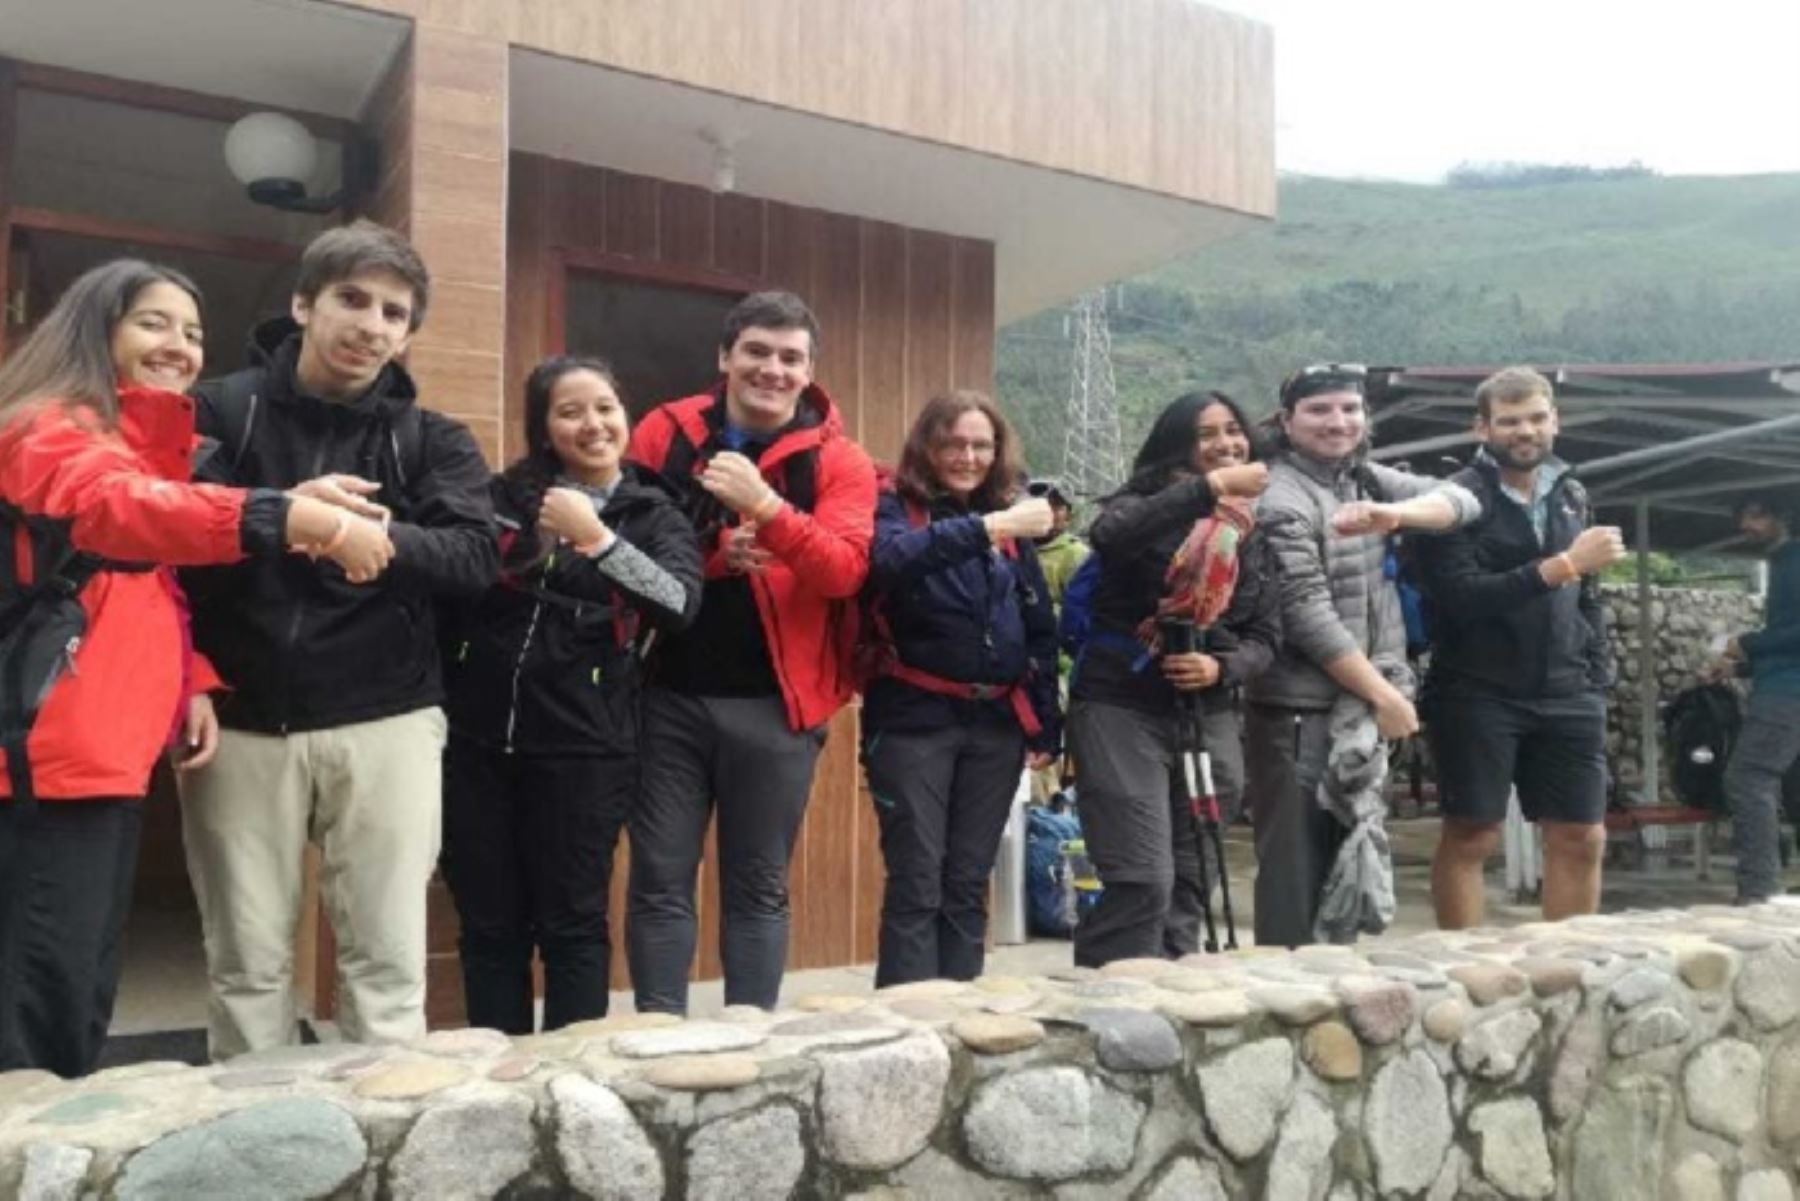 Como nuevo mecanismo de control de ingreso a la Red de Camino Inca del Santuario de Machu Picchu, a partir de la fecha, se les colocará una pulsera de identificación y reconocimiento como “Hinchas de la Conservación” a todos los visitantes a este sector del Camino Inca.